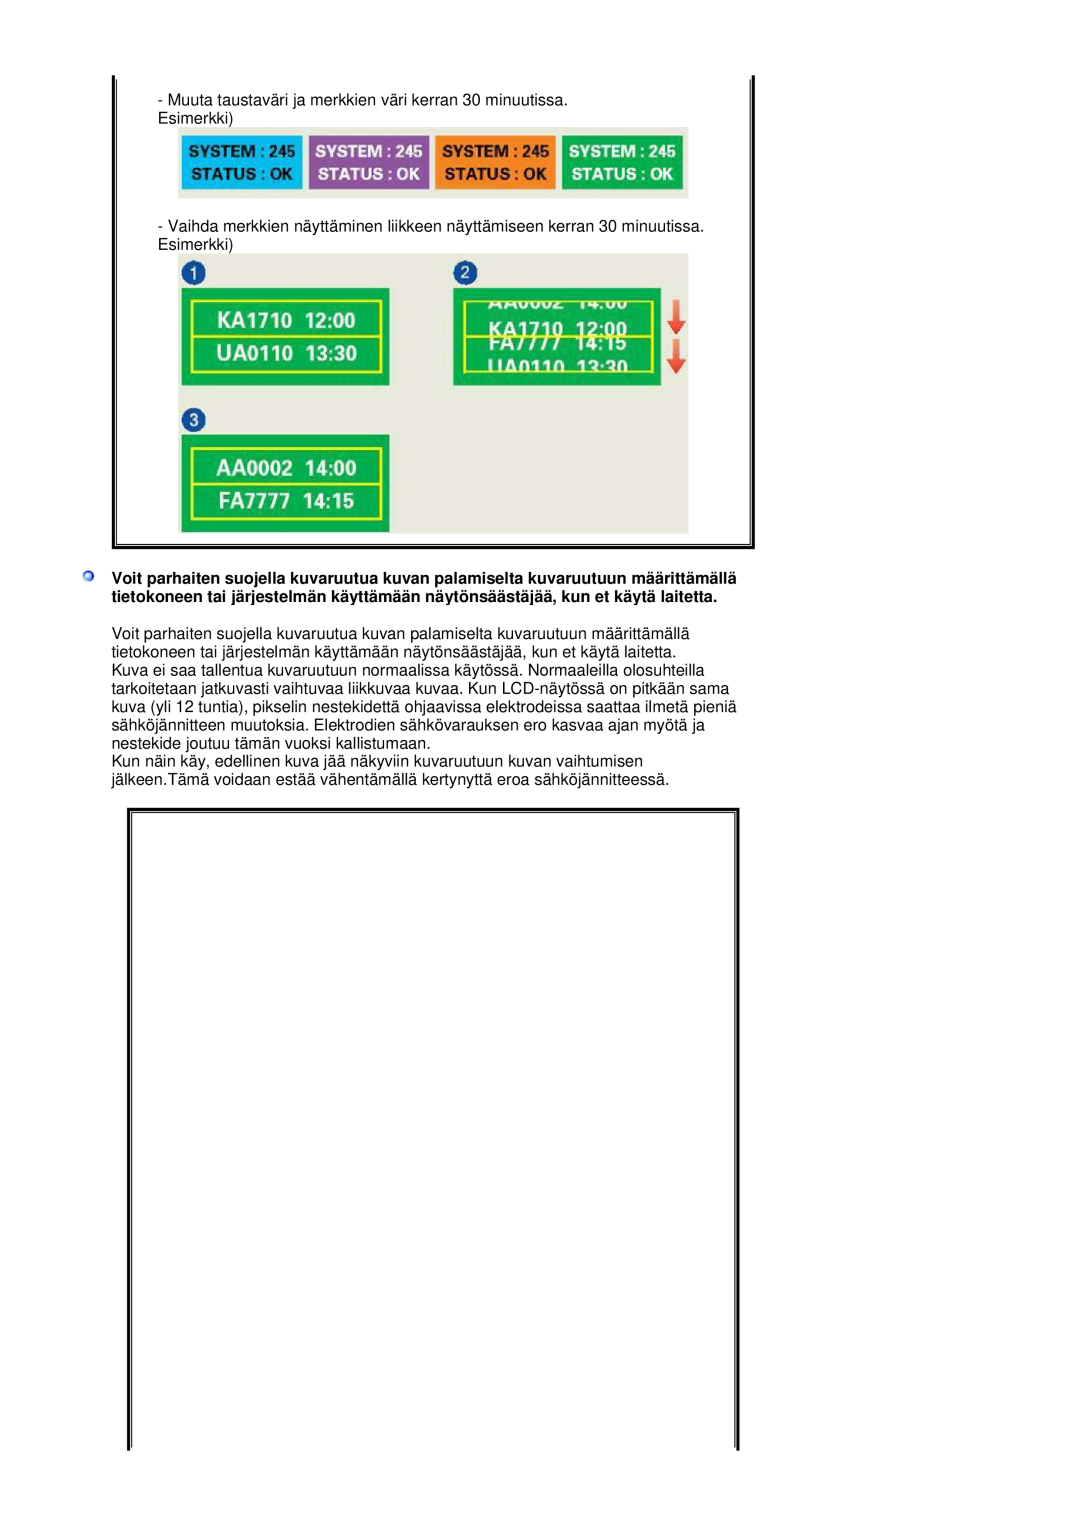 Samsung LS19DOASS/EDC, LS17DOASS/EDC manual Muuta taustaväri ja merkkien väri kerran 30 minuutissa. Esimerkki 